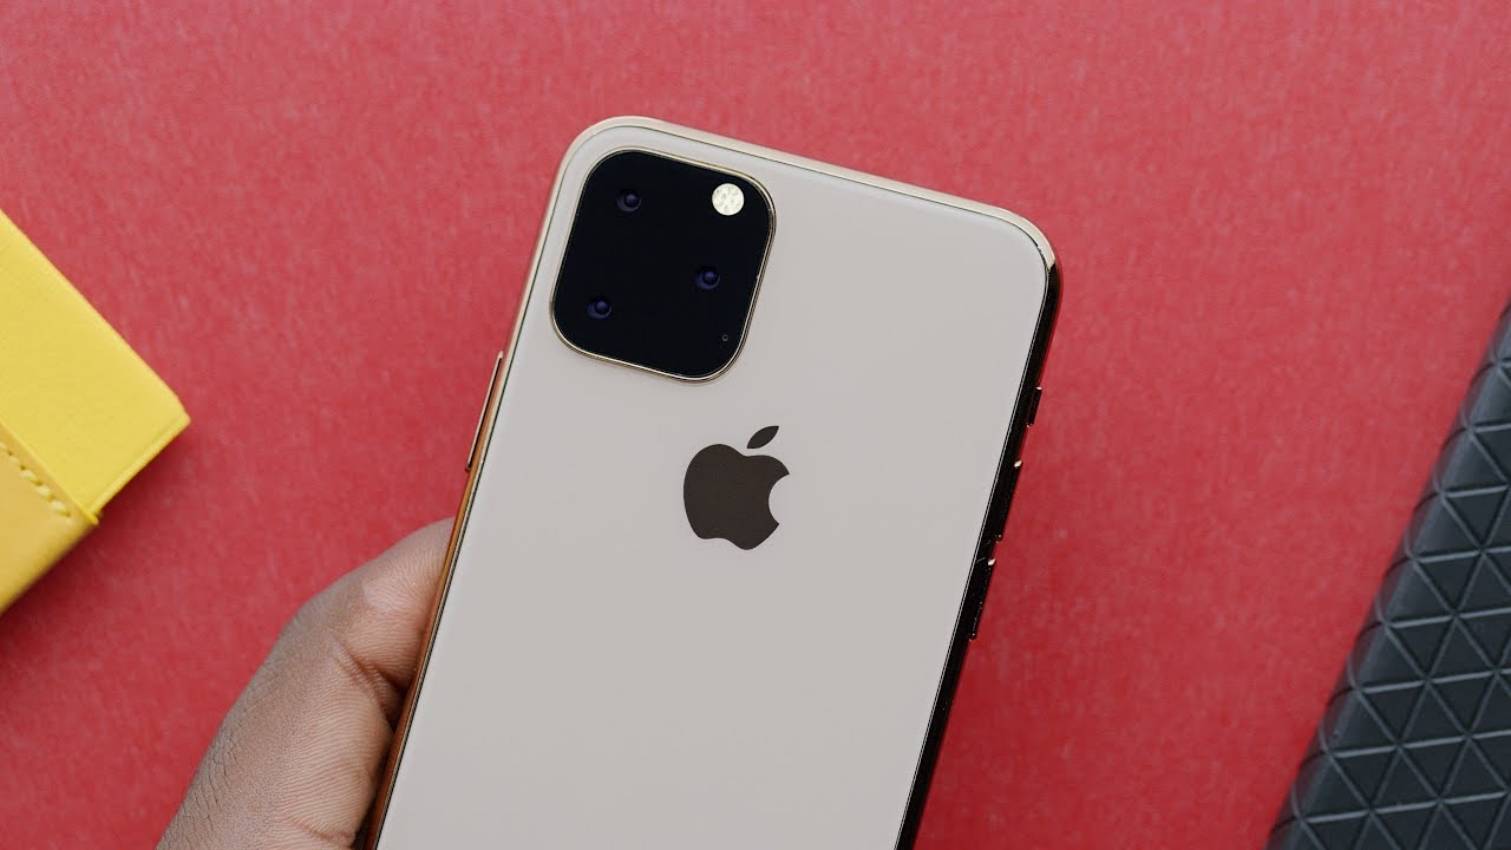 Hvorfor har iPhone 11 Apple-logoet omplaceret i etuiet